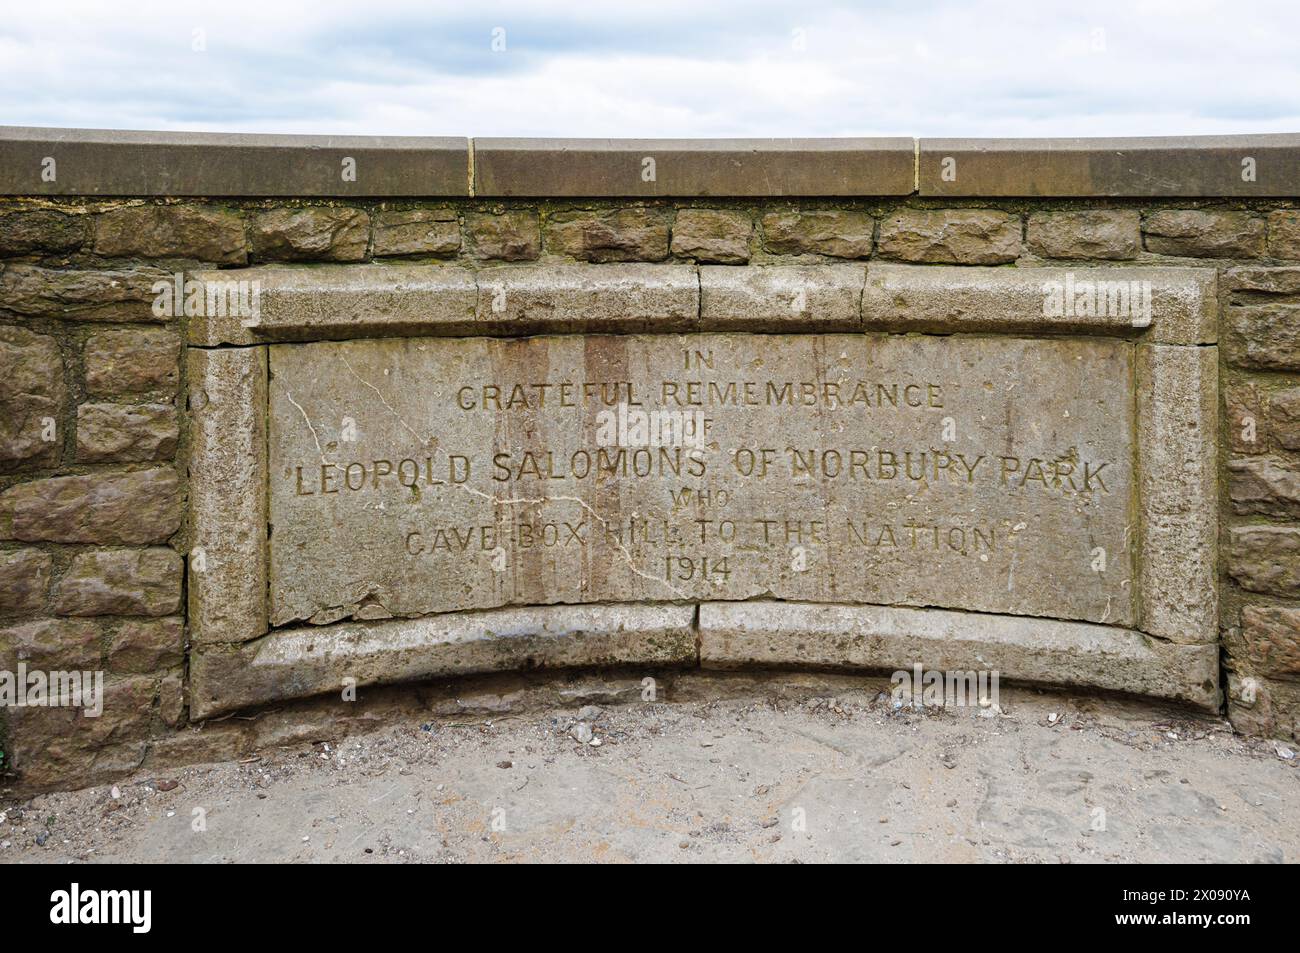 Gedenktafel am Salomons Memorial auf der Spitze des Box Hill in der Nähe von Dorking, Surrey, Südostengland, erinnert an den Spender Leopold Salomons aus Norbury Park Stockfoto